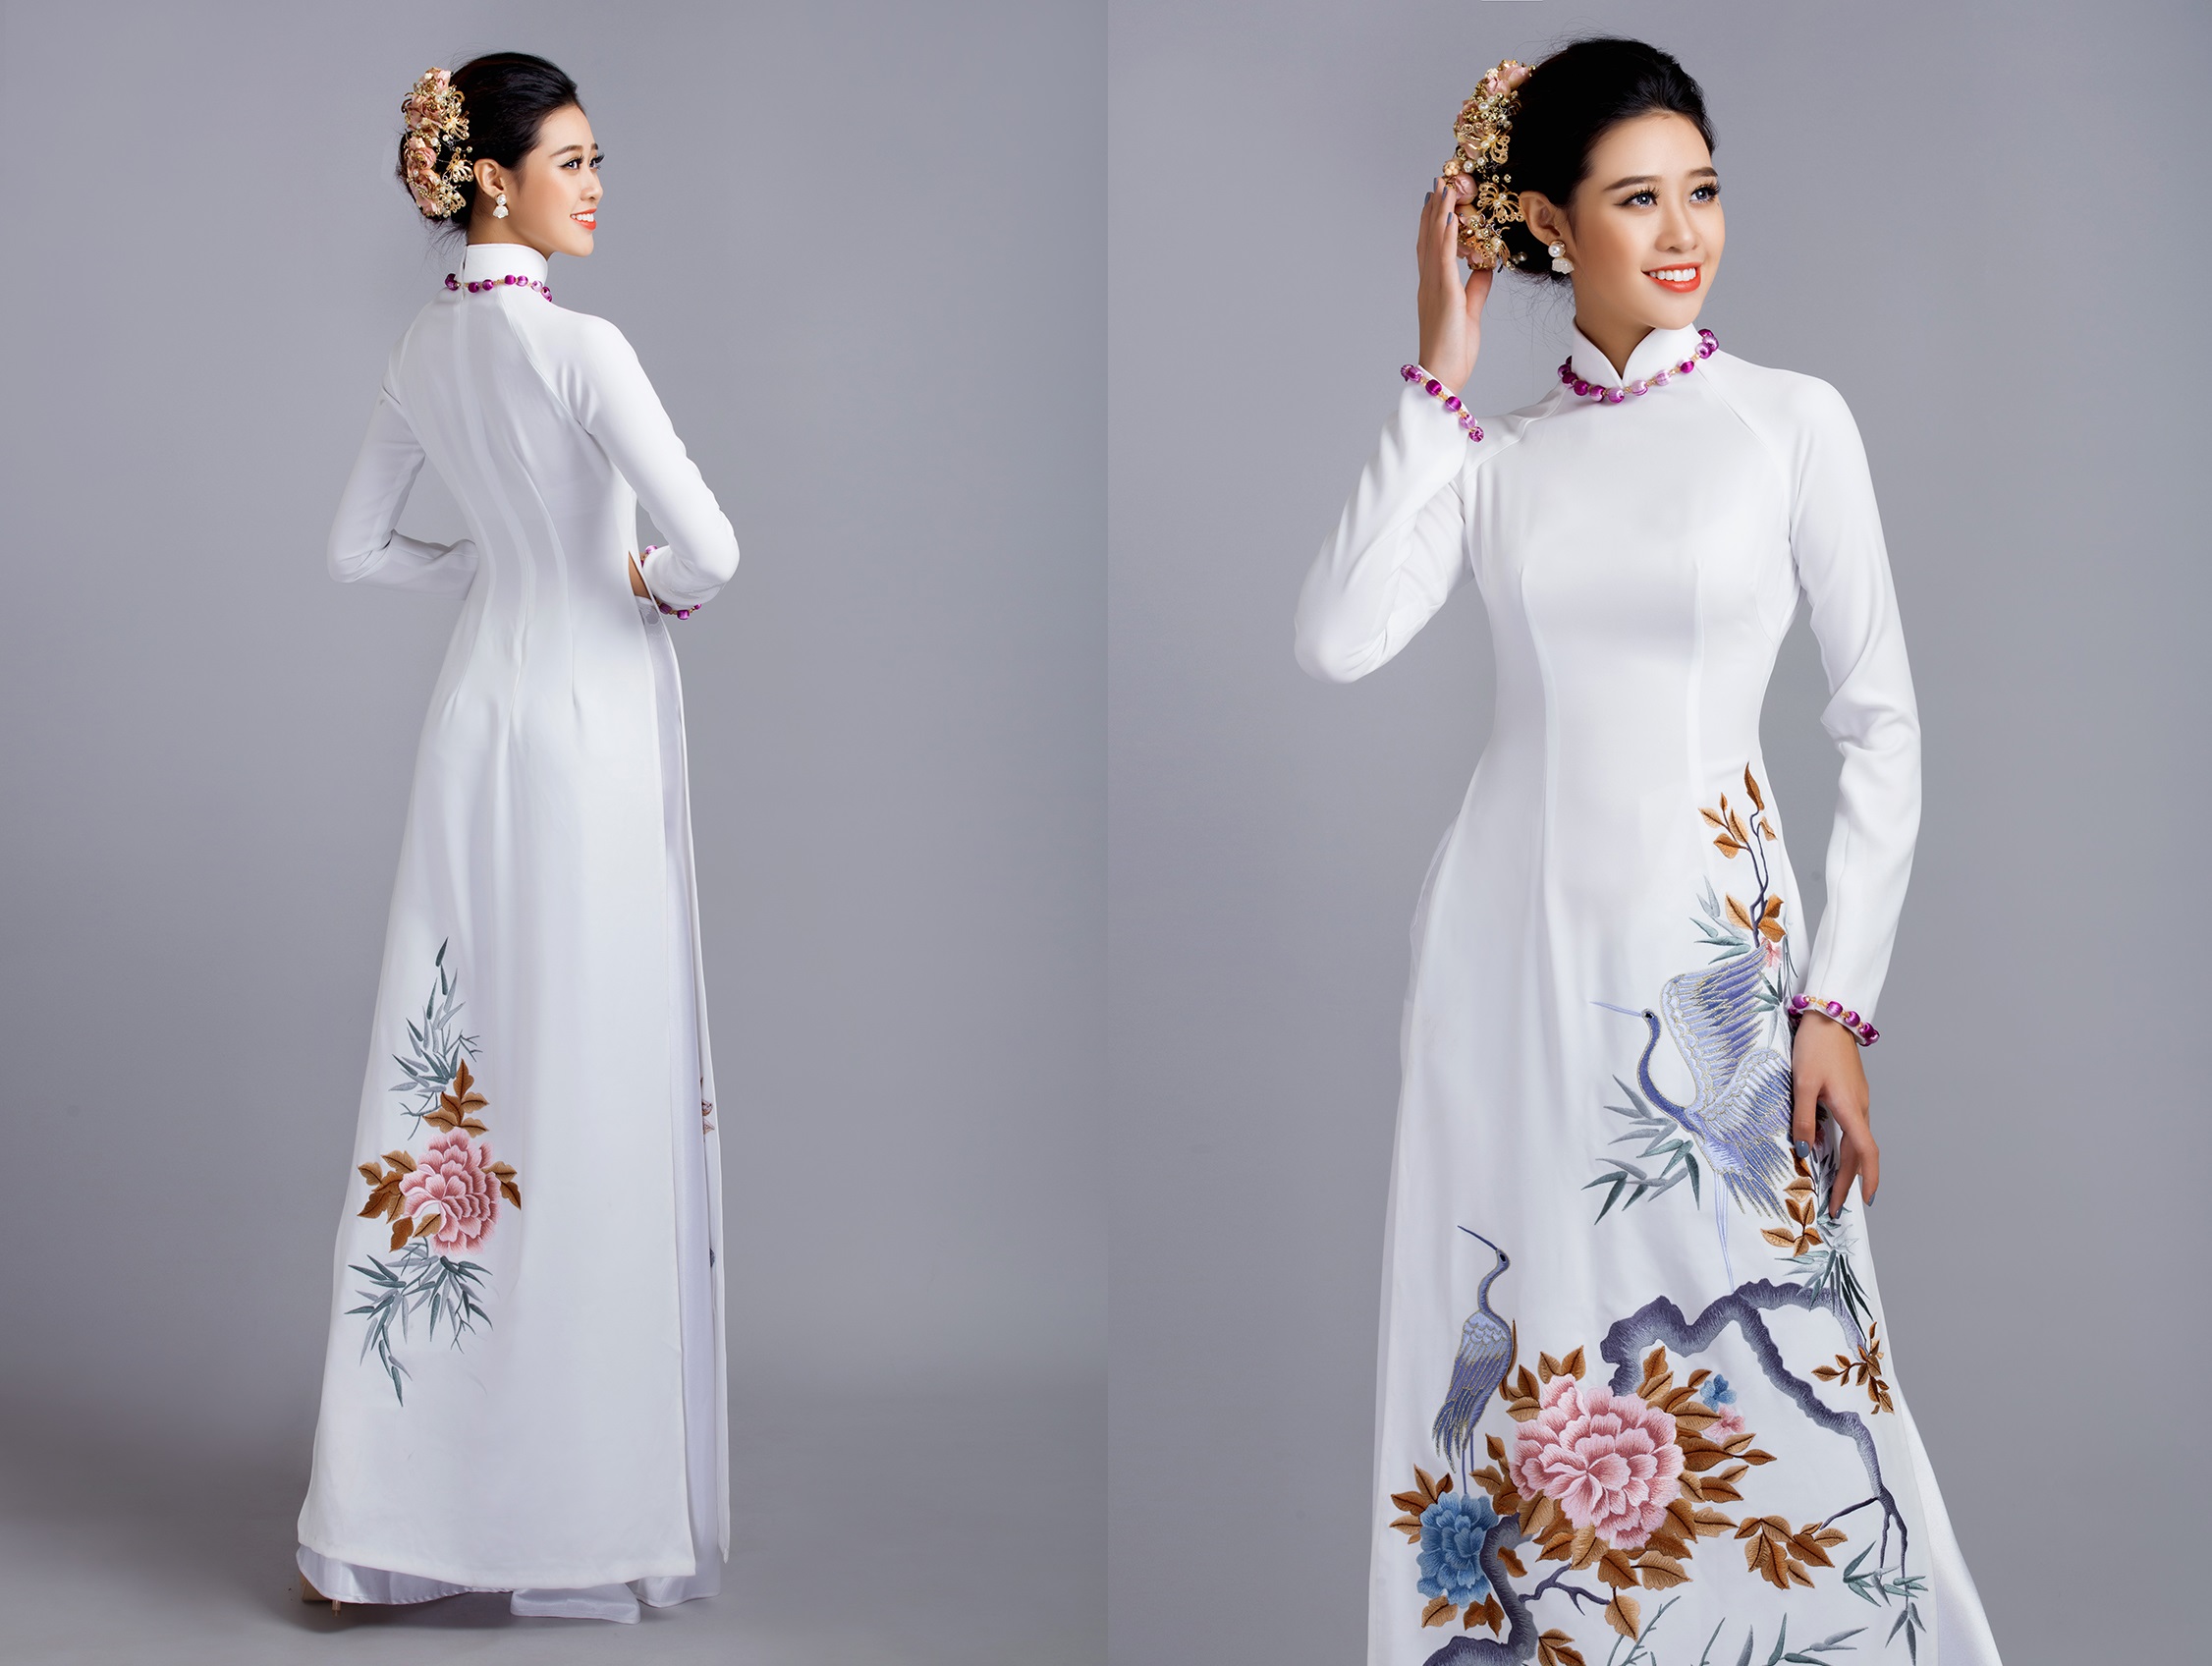 Tham khảo những mấu áo dài cưới đẹp ngây ngất từ thương hiệu áo dài danh tiếng Minh Châu.